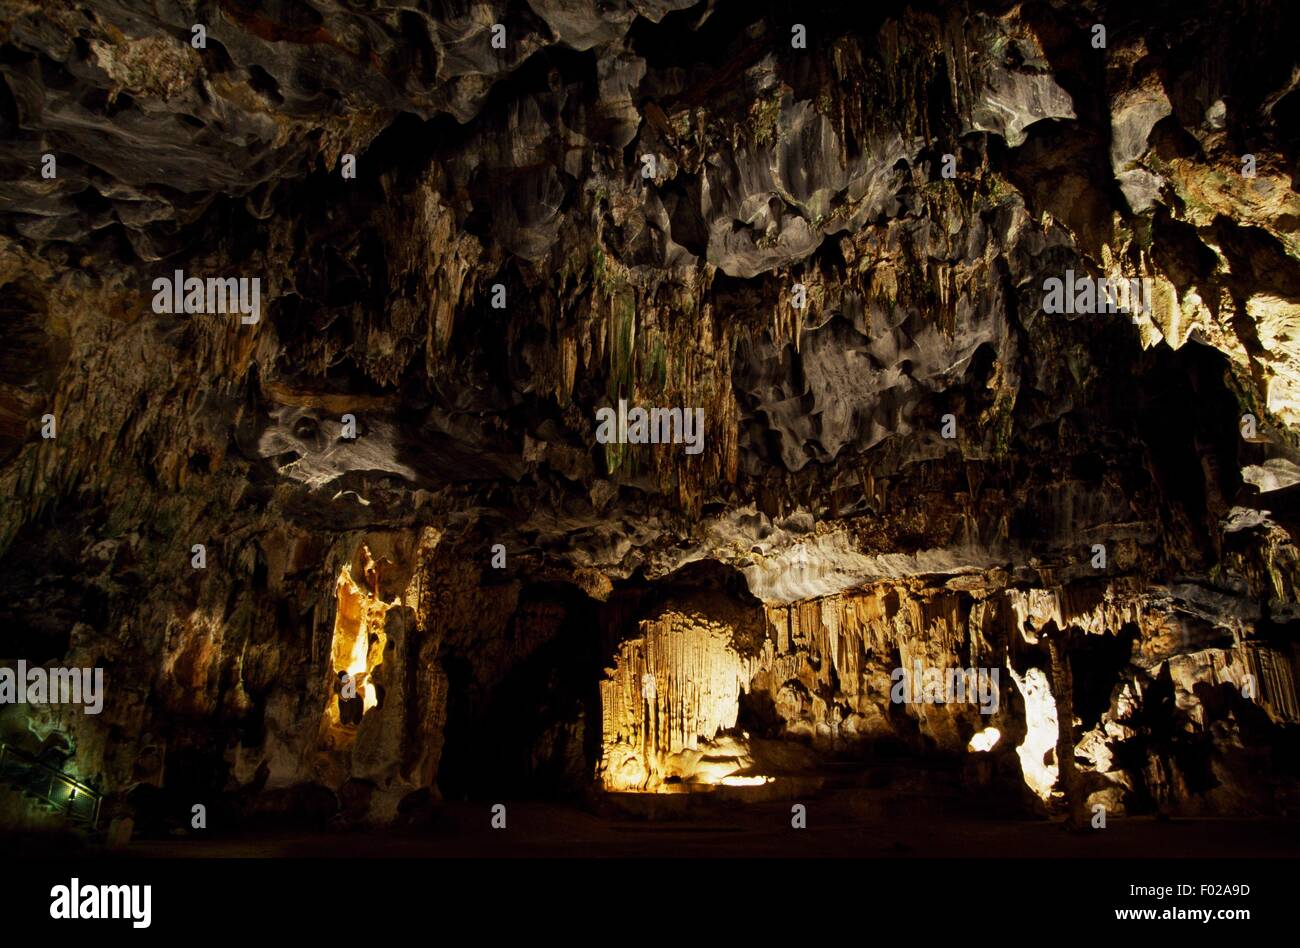 Formations de calcite, Cango Caves, Petit Karoo, Afrique du Sud. Banque D'Images